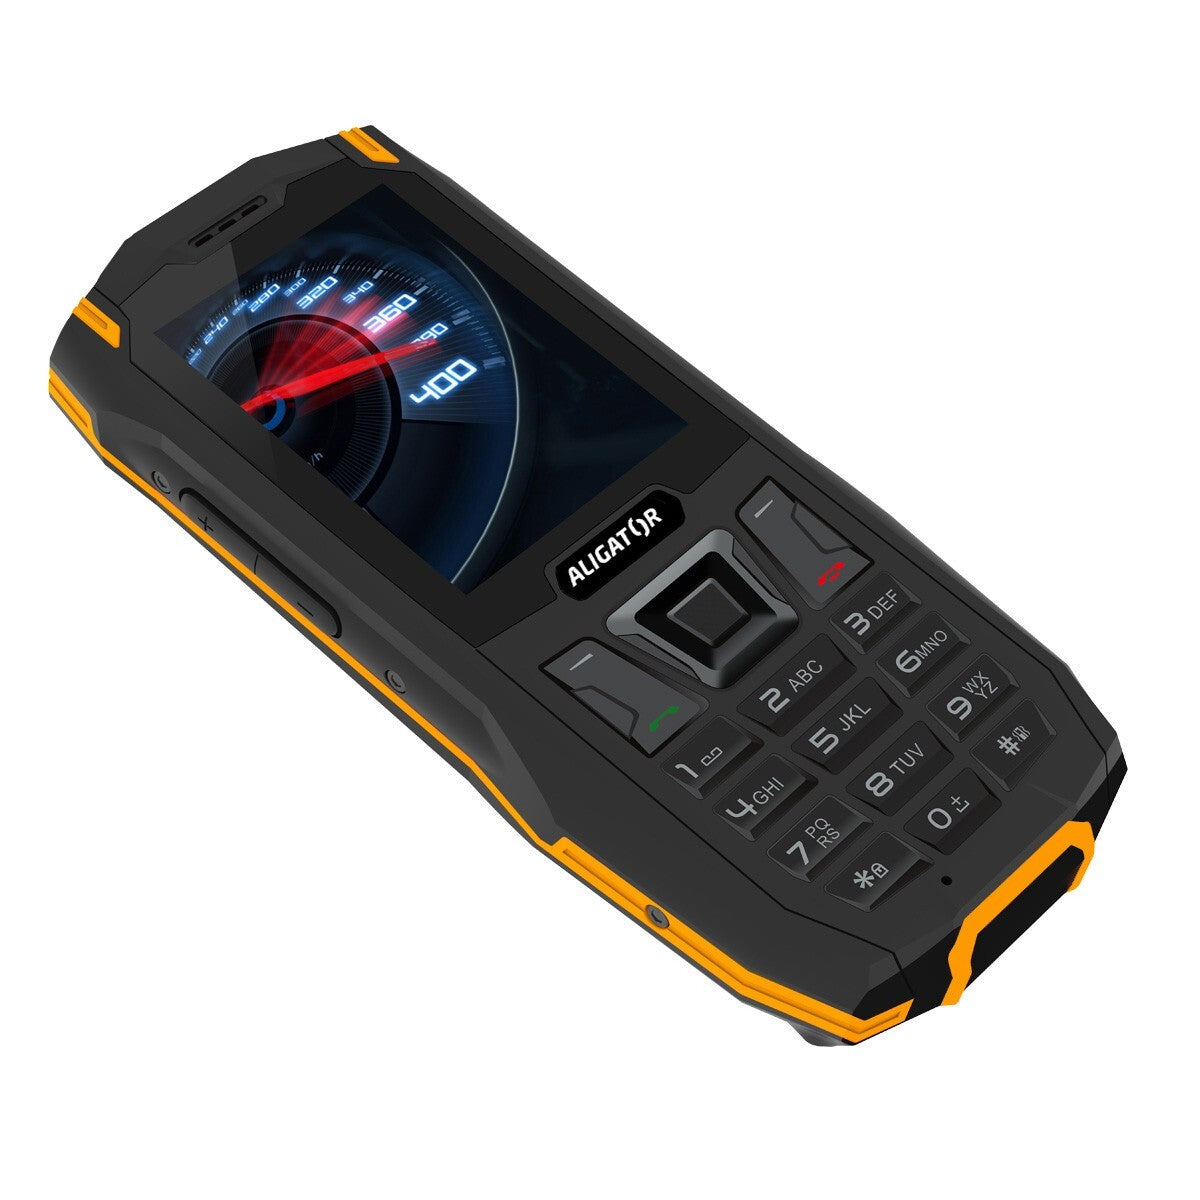 Odolný tlačítkový telefon Aligator K50 eXtremo, KaiOS, oranžová V